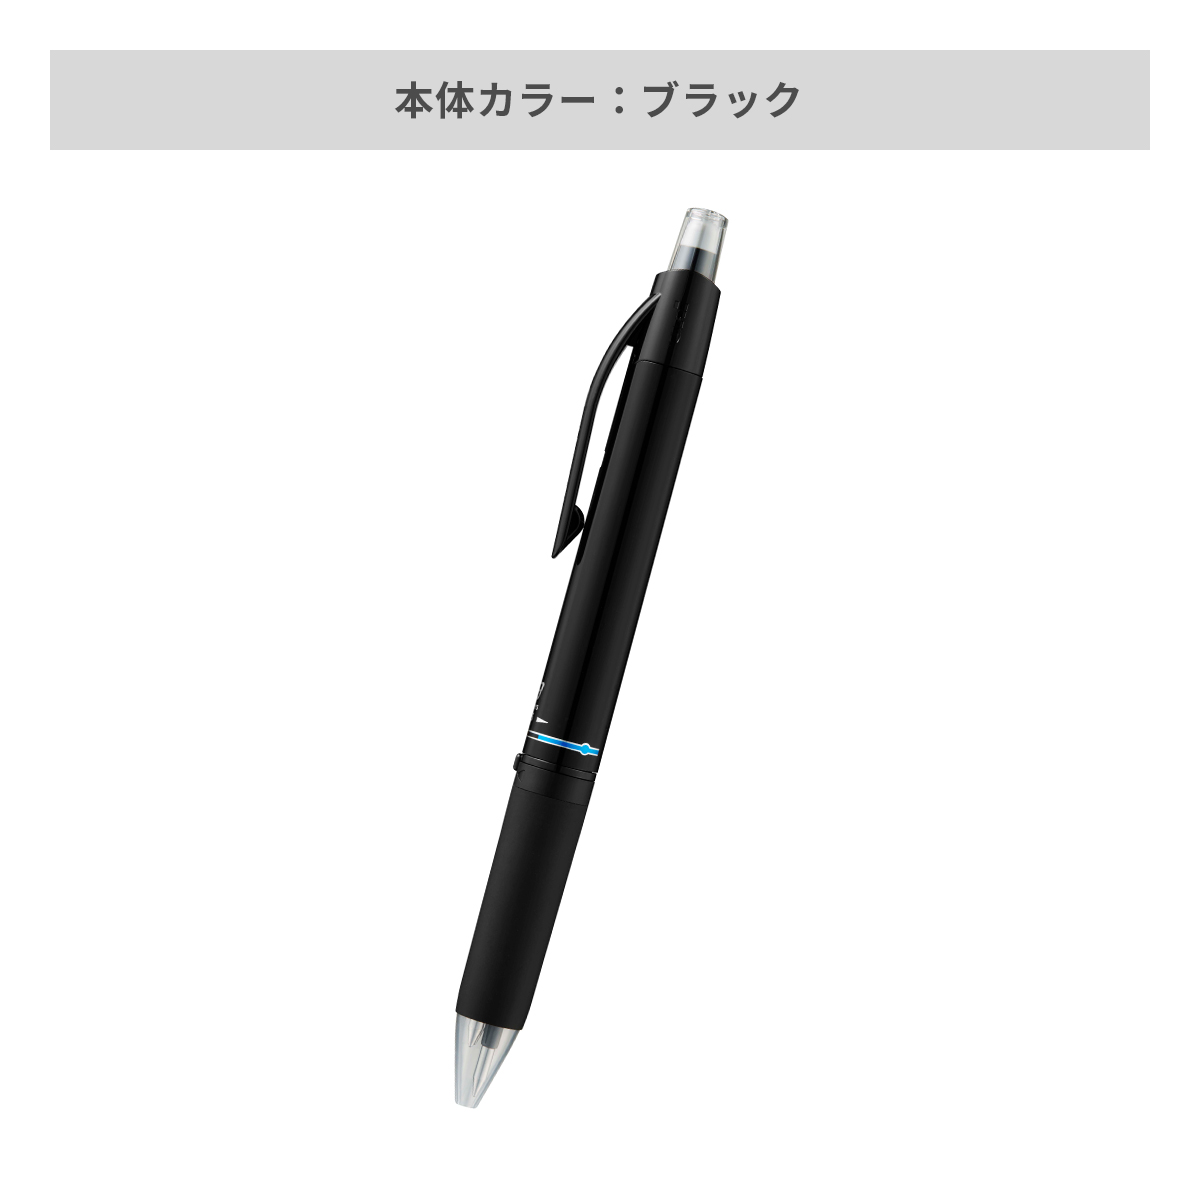 三菱鉛筆(uni) ユニボール アールイー3 0.5mm【名入れボールペン